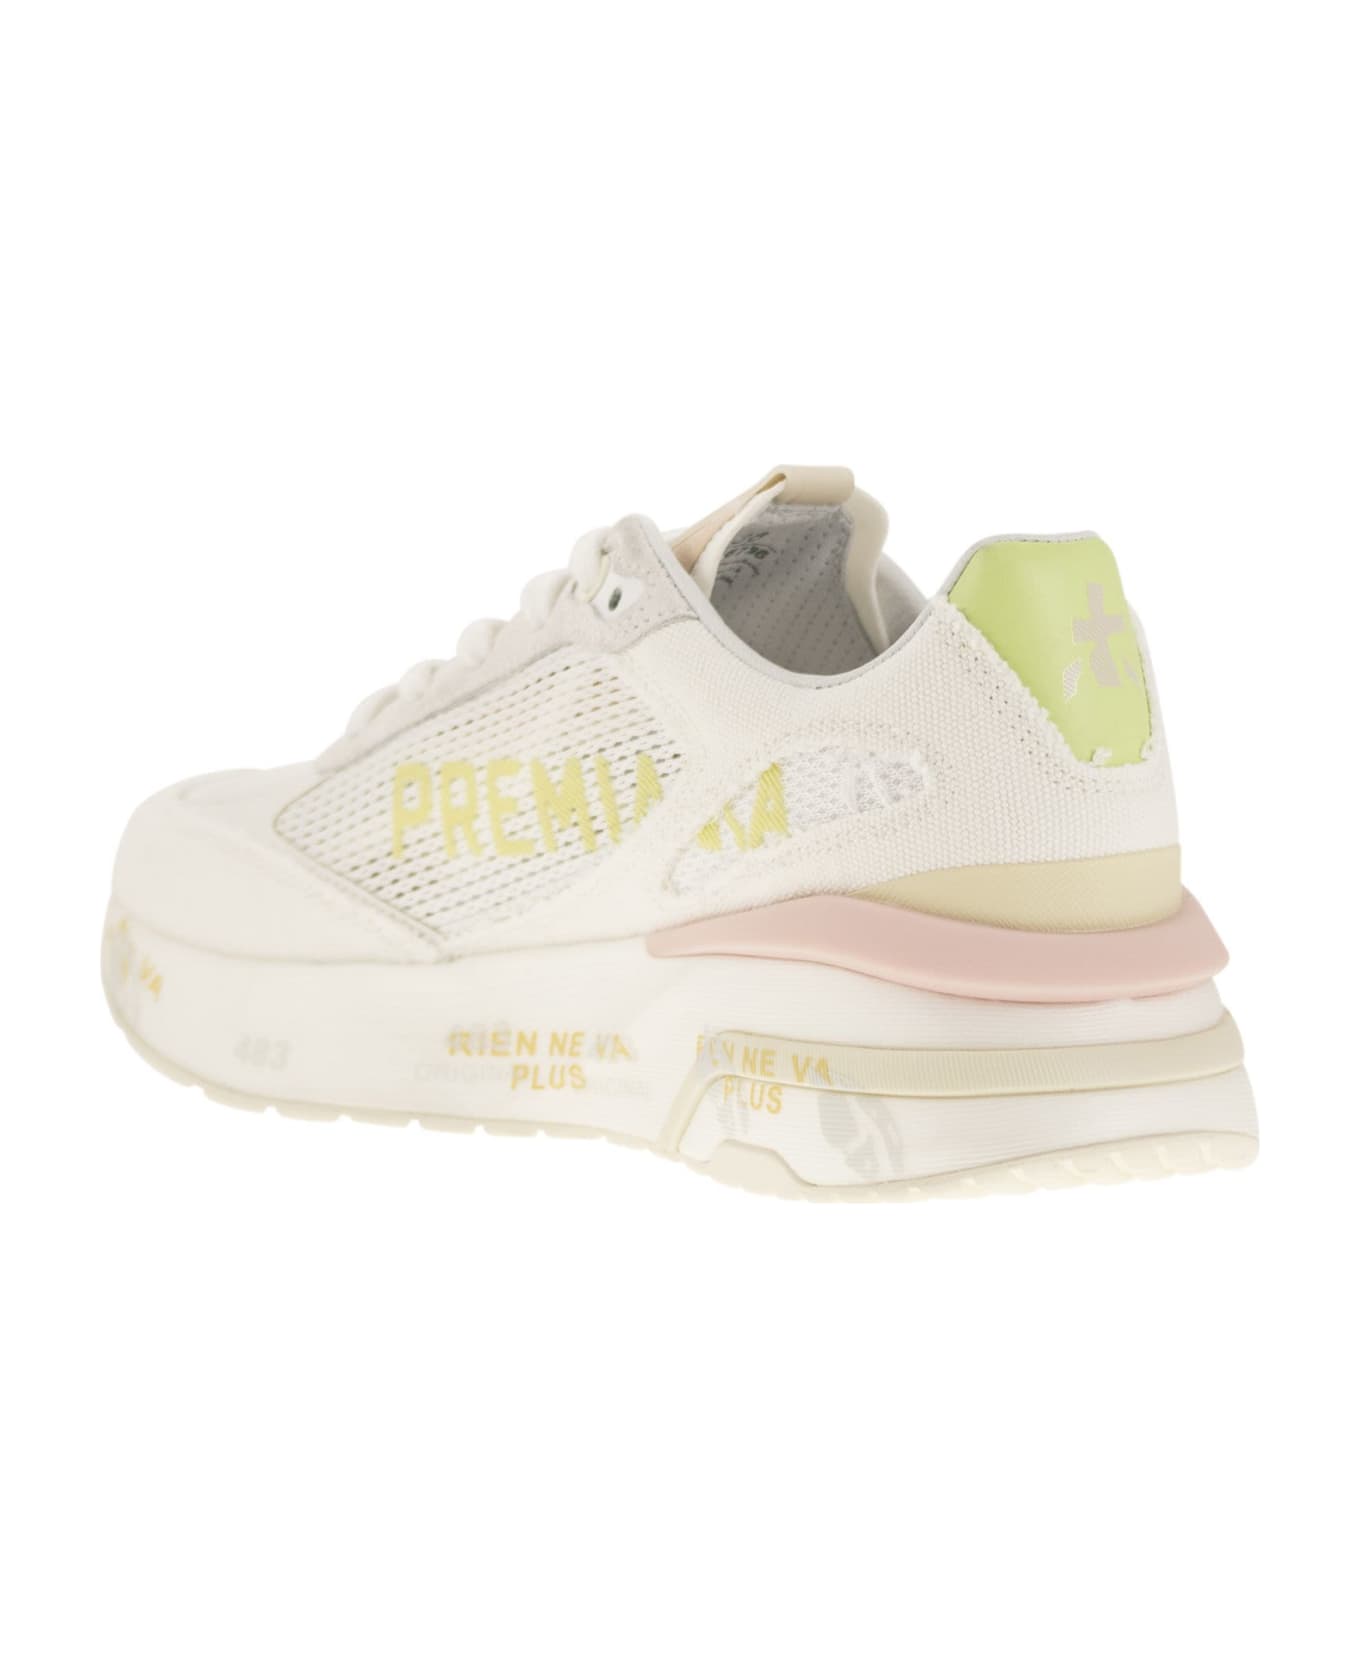 Premiata 'moerund' Sneakers - White/pink スニーカー